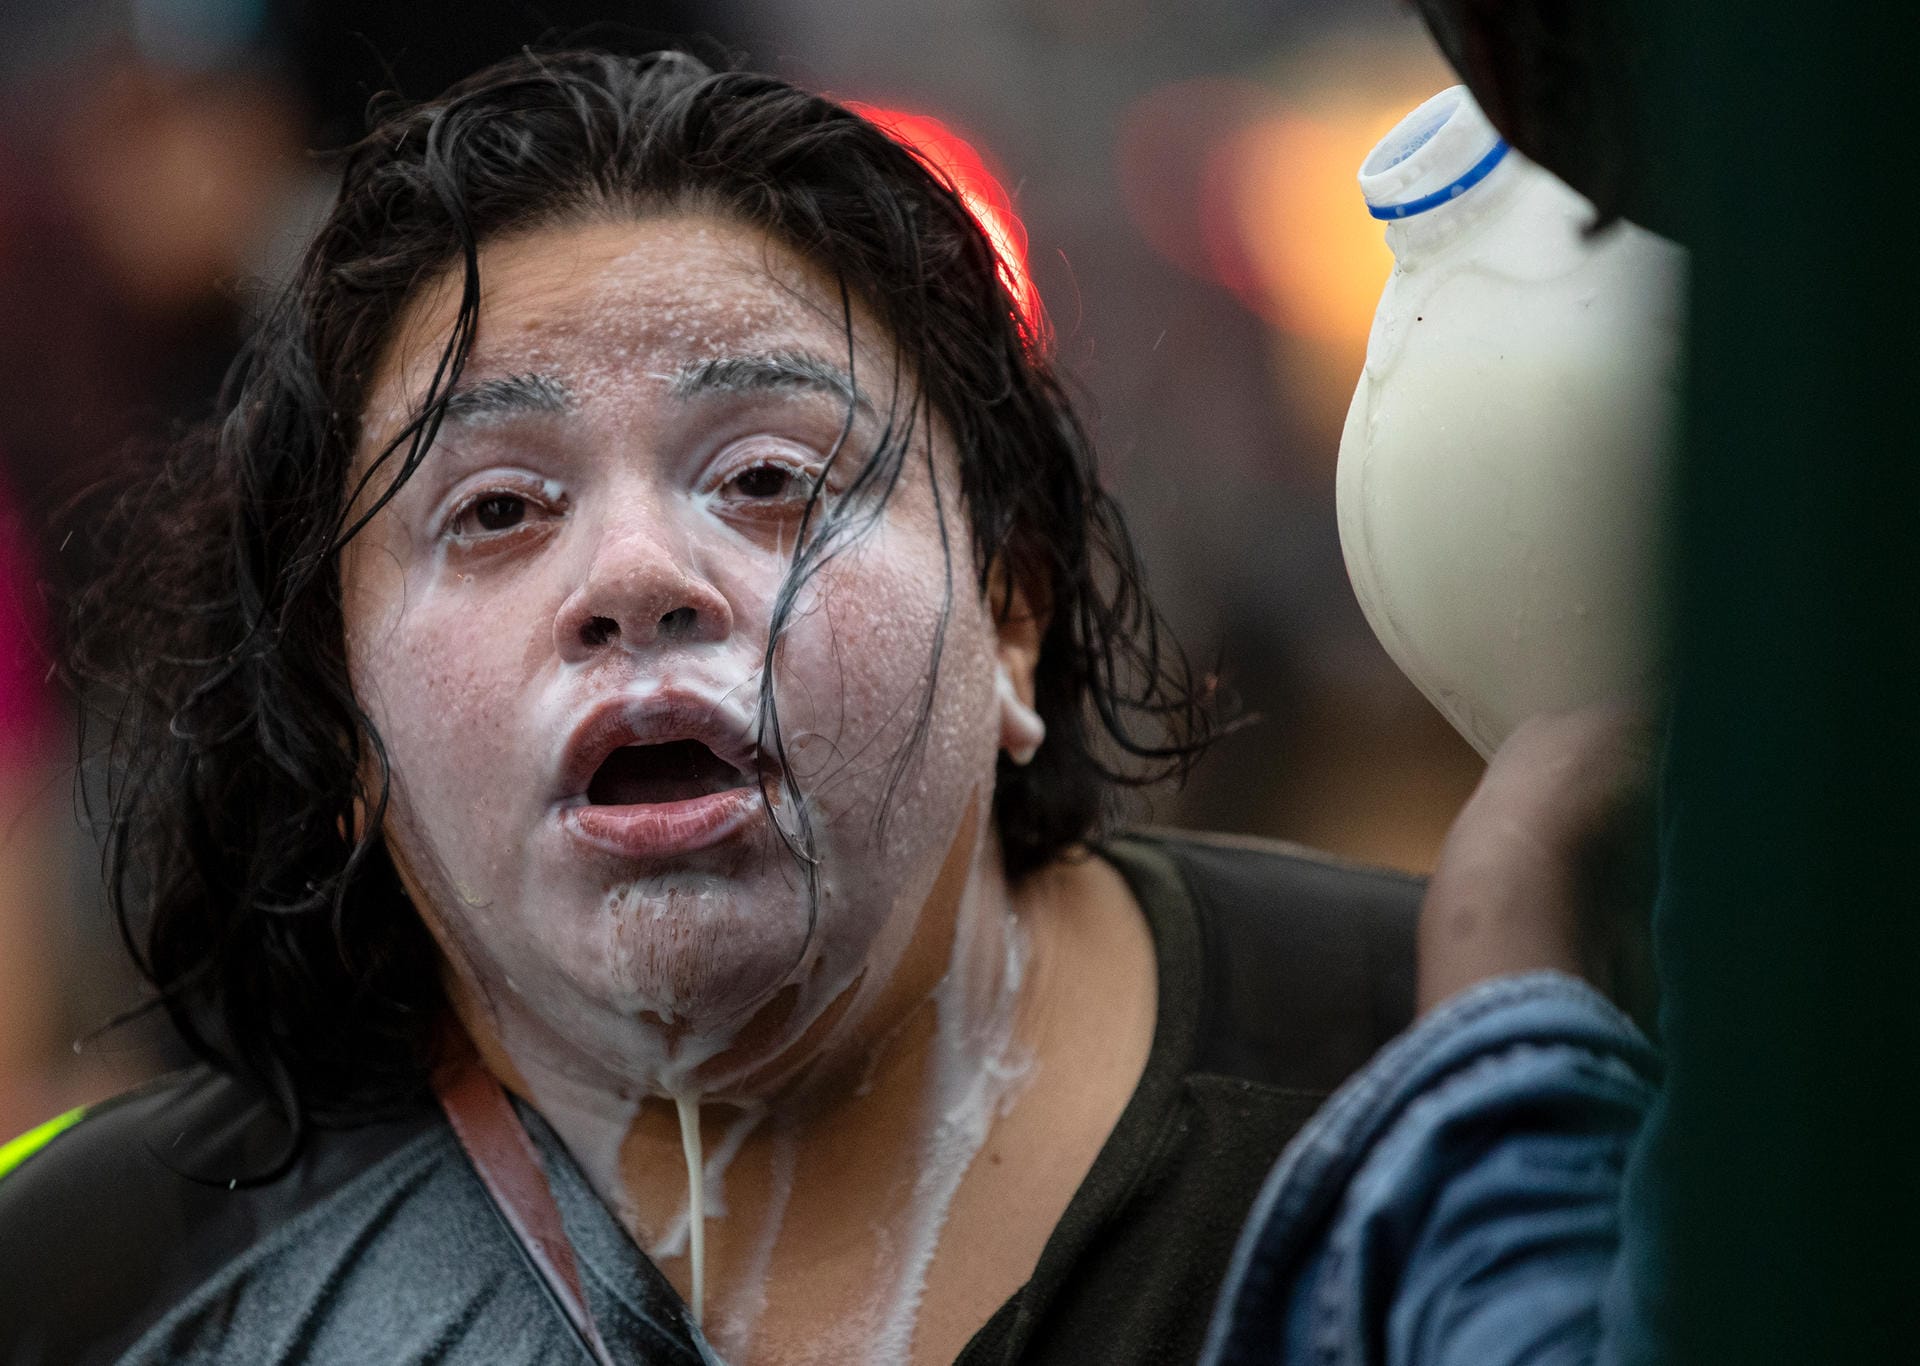 Eine Demonstrantin wird mit Flüssigkeit überschüttet.